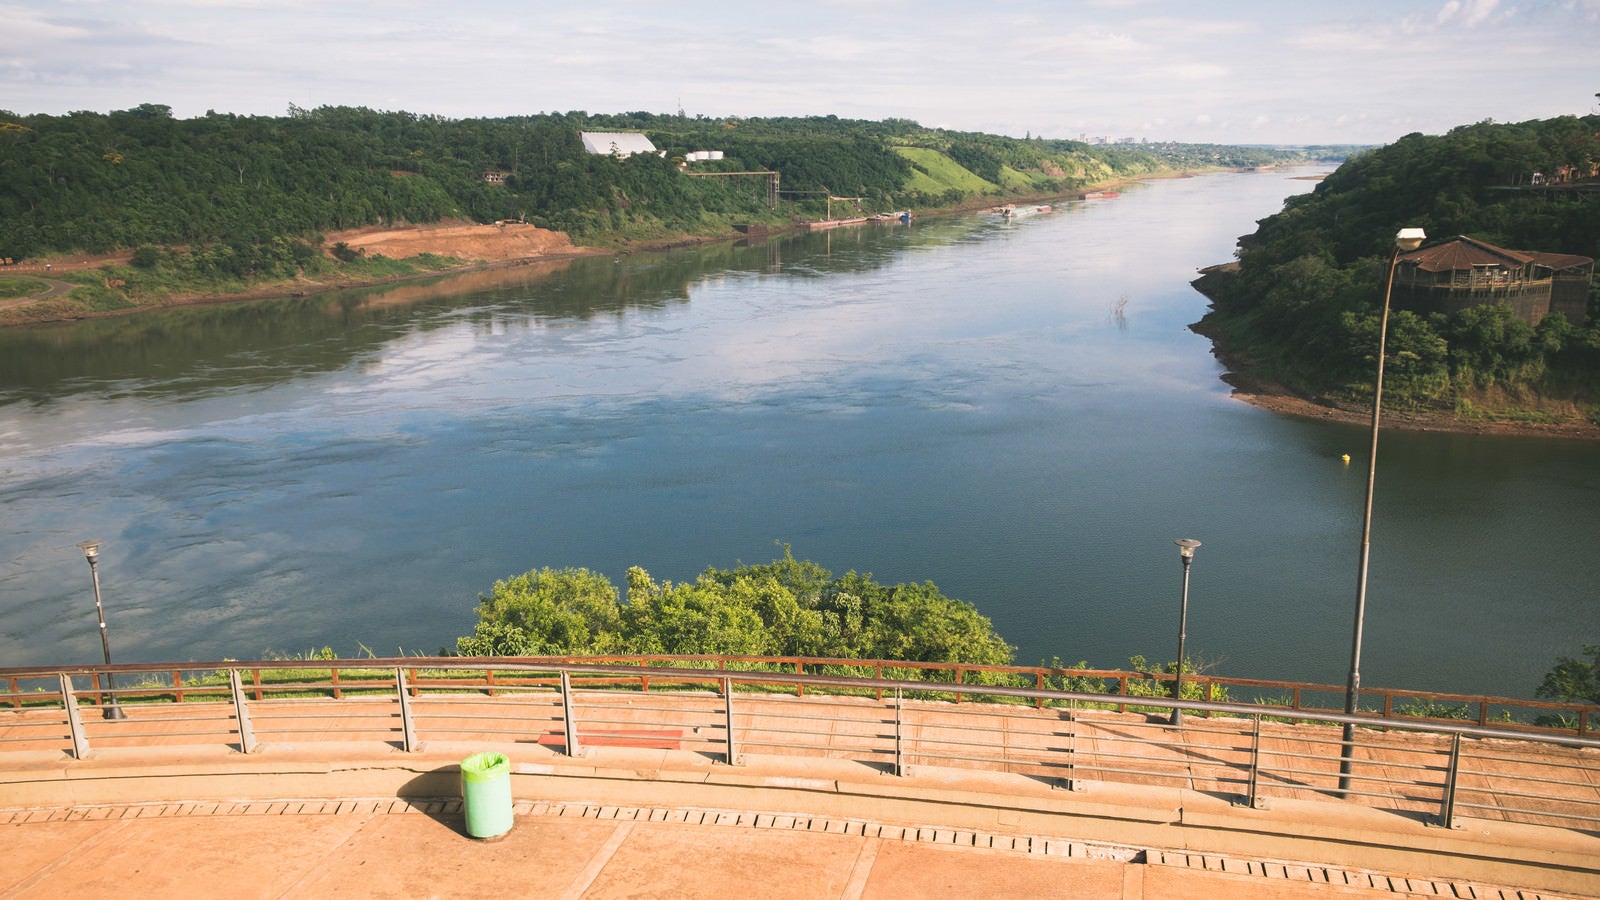 「広場から見た三国国境の川（アルゼンチン・ブラジル・パラグアイ）」の写真